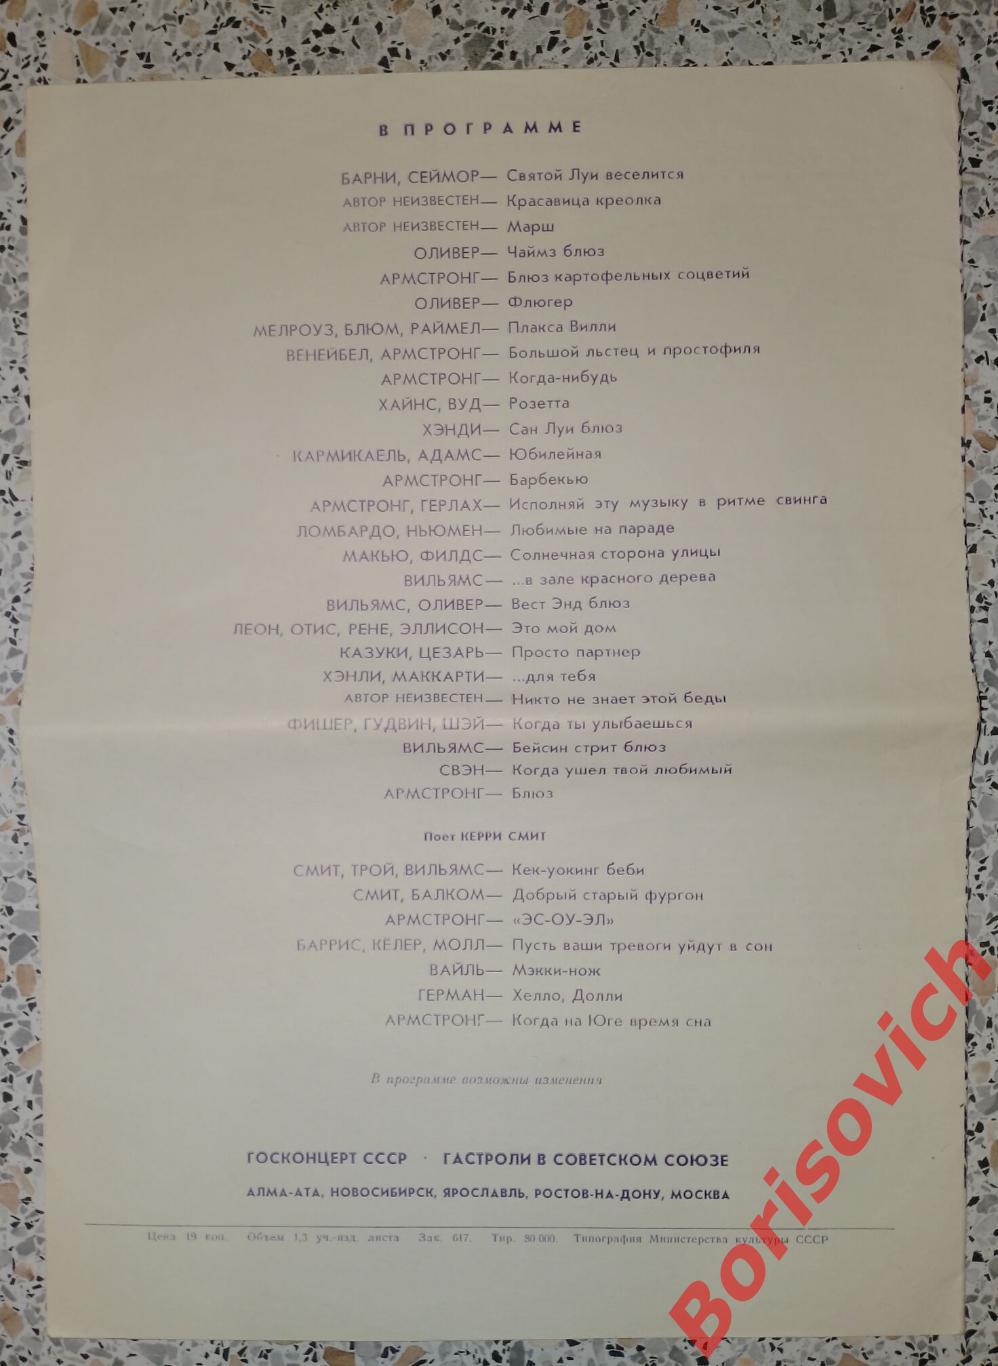 Программка НЬЮ-ЙОРК ДЖАЗ РЕПЕРТУАРКОМПАНИ США Гастроли в СССР 70 - е 1